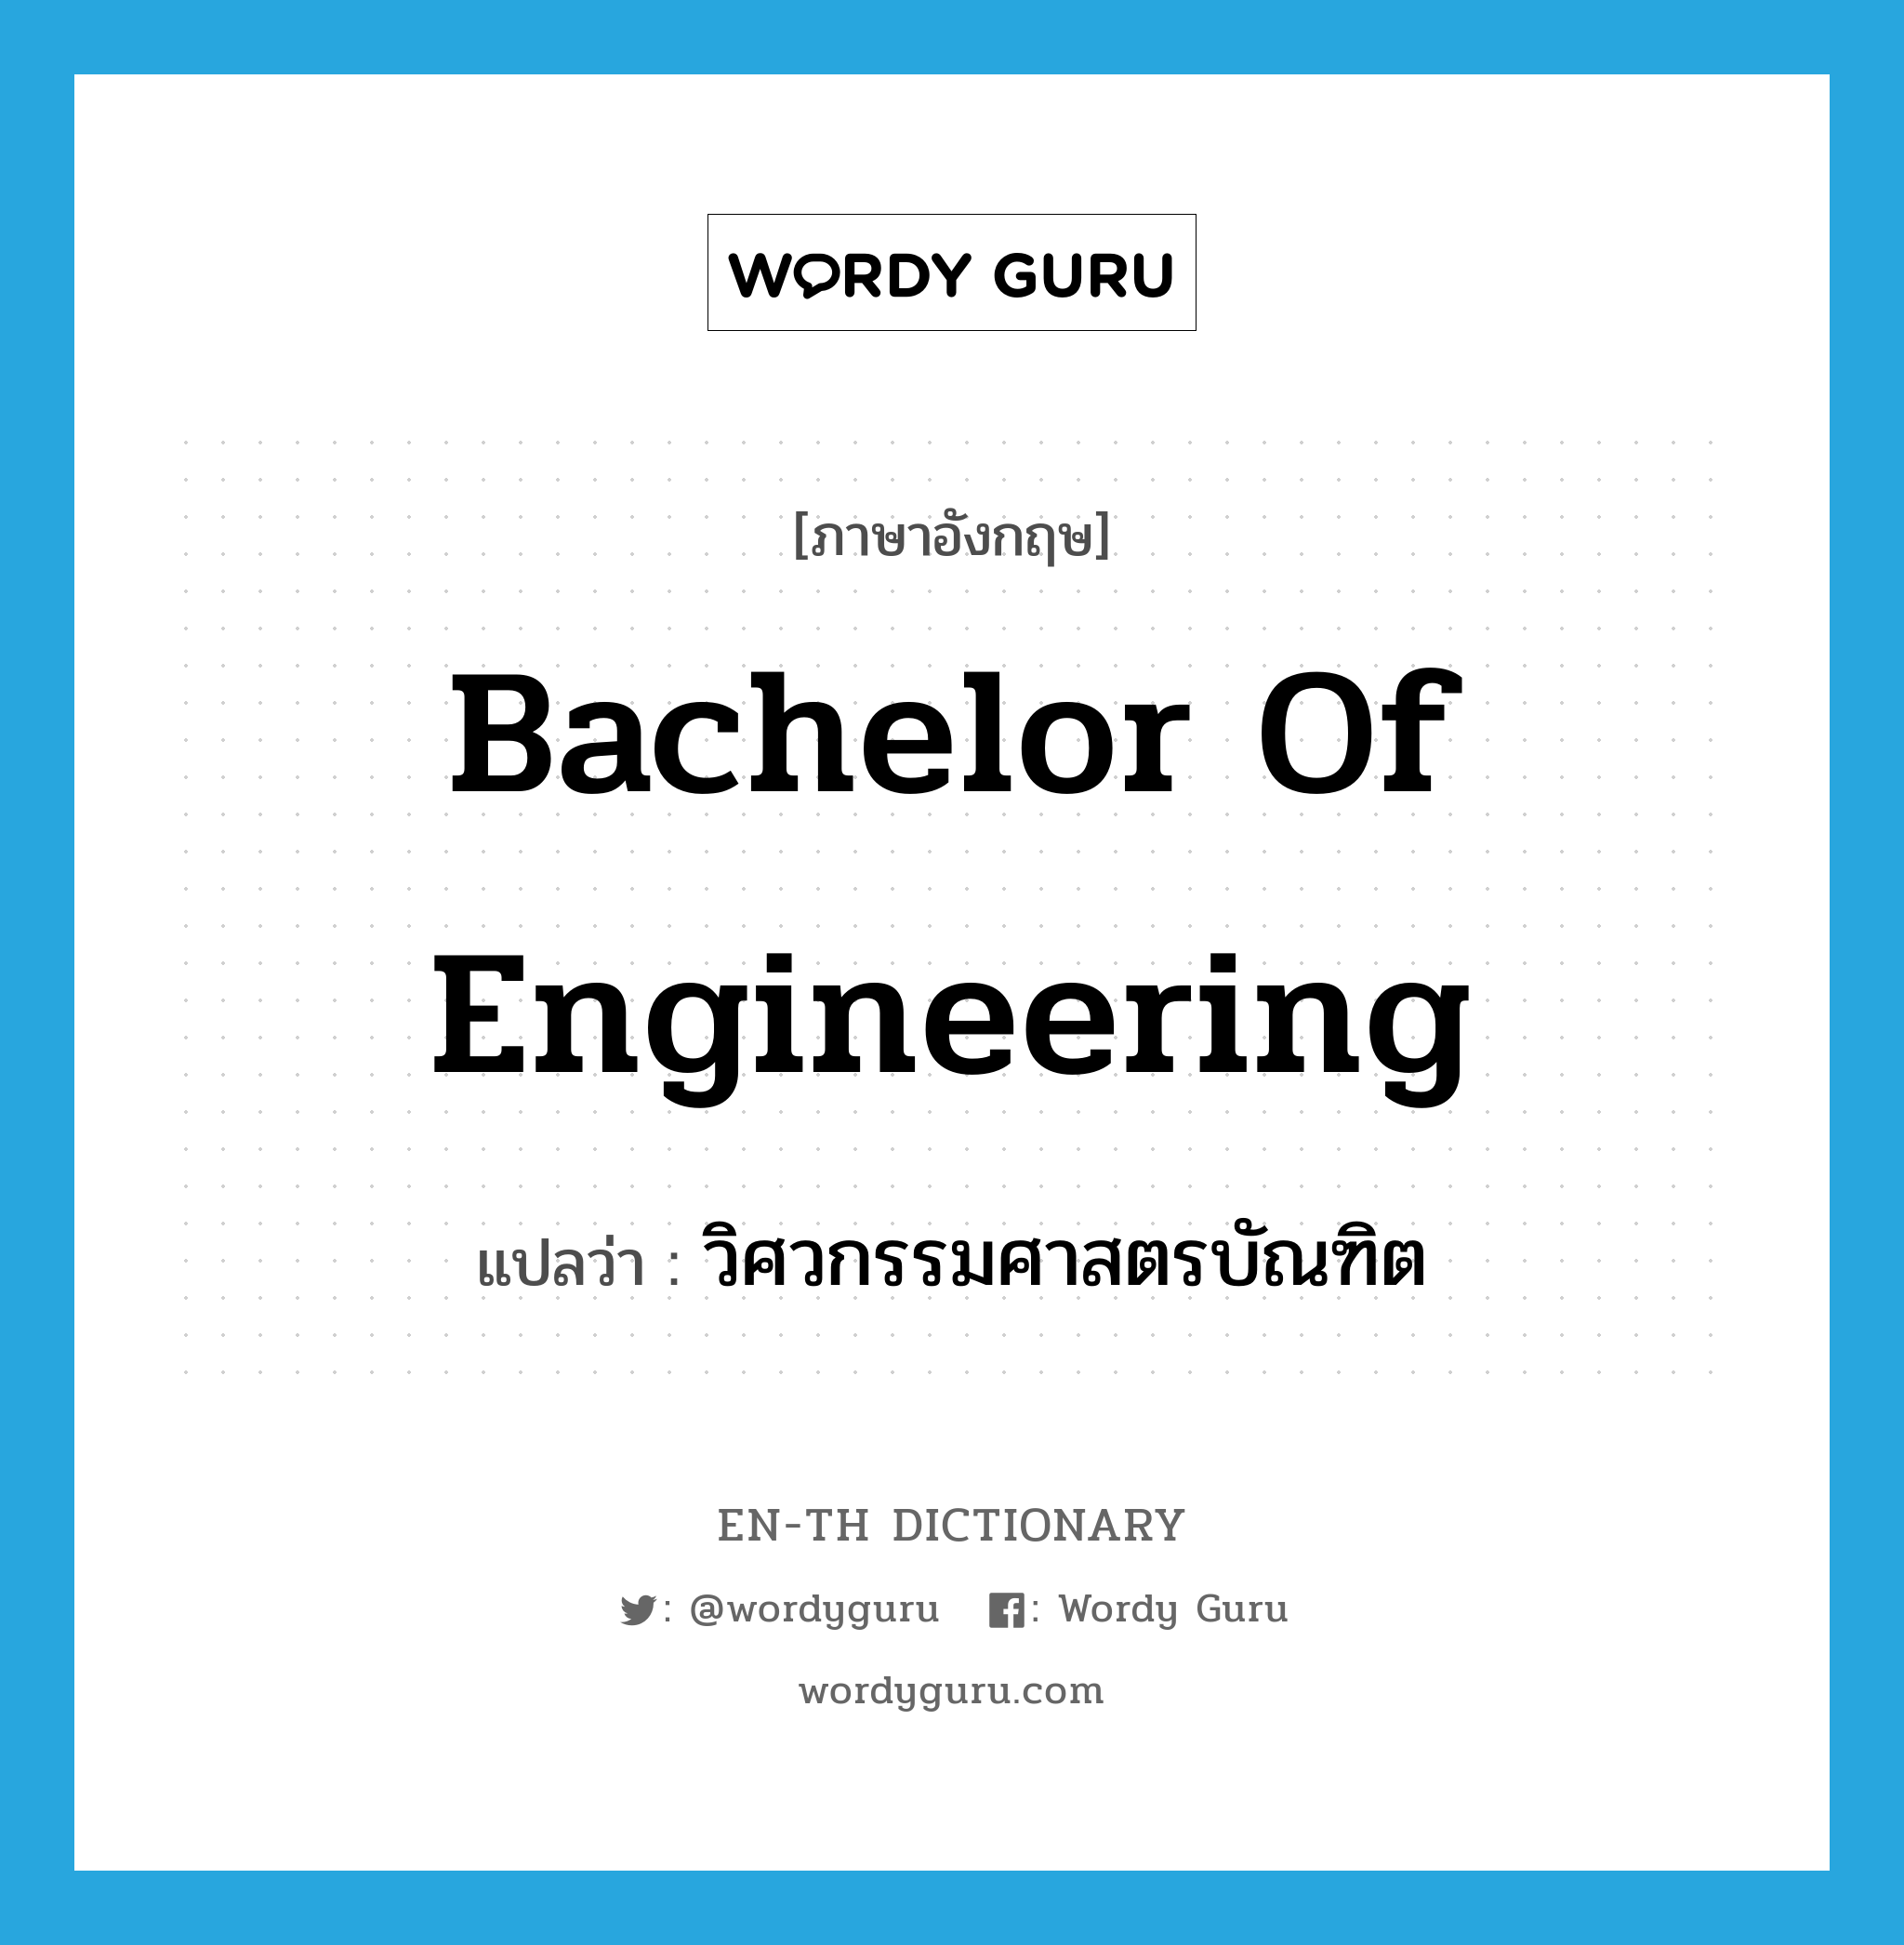 วิศวกรรมศาสตรบัณฑิต ภาษาอังกฤษ?, คำศัพท์ภาษาอังกฤษ วิศวกรรมศาสตรบัณฑิต แปลว่า Bachelor of Engineering ประเภท N หมวด N